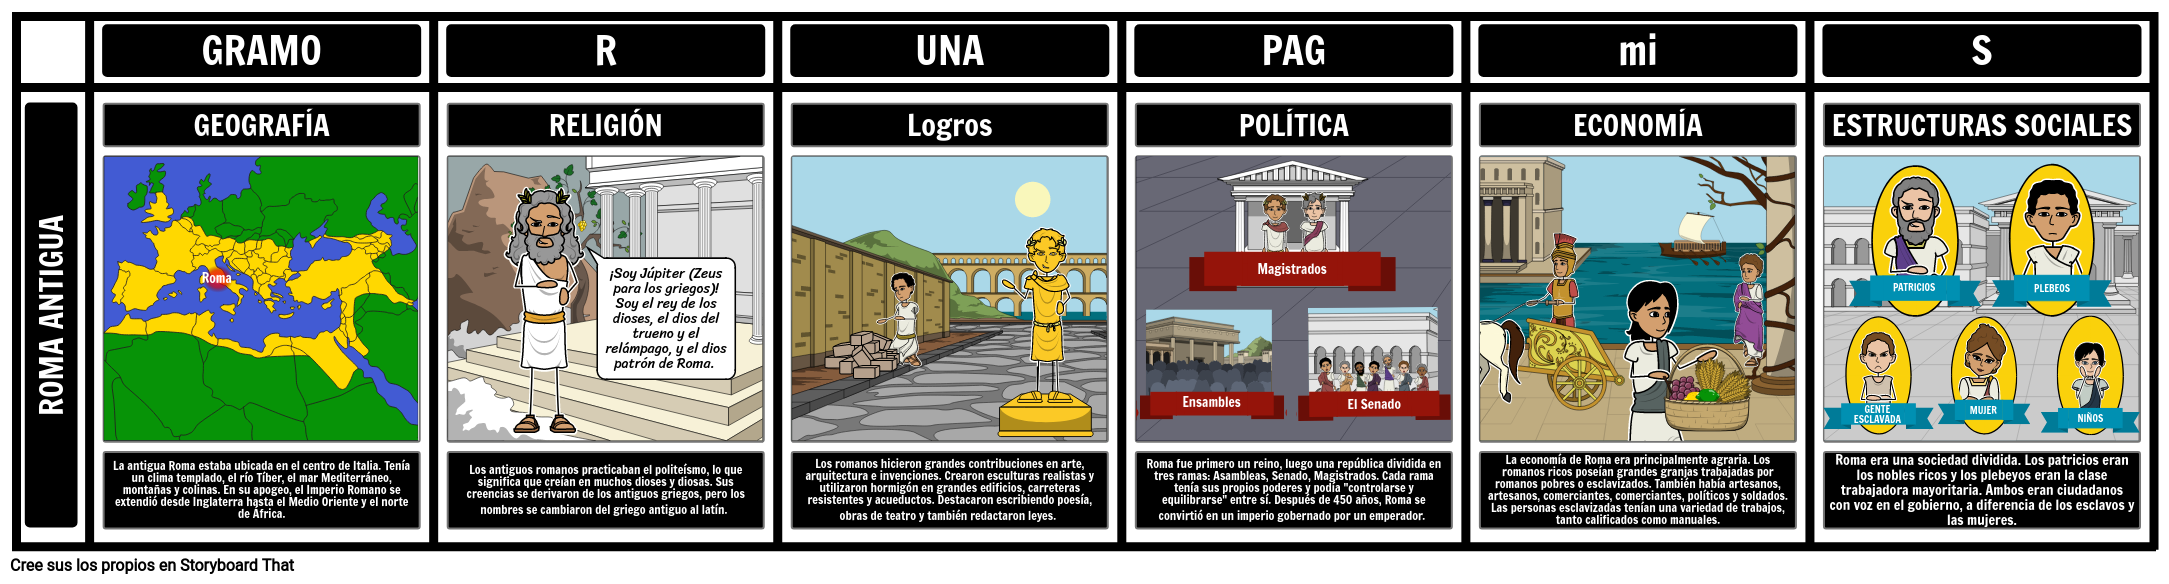 Gráfico De Uvas De La Antigua Roma Storyboard By Es Examples 2374